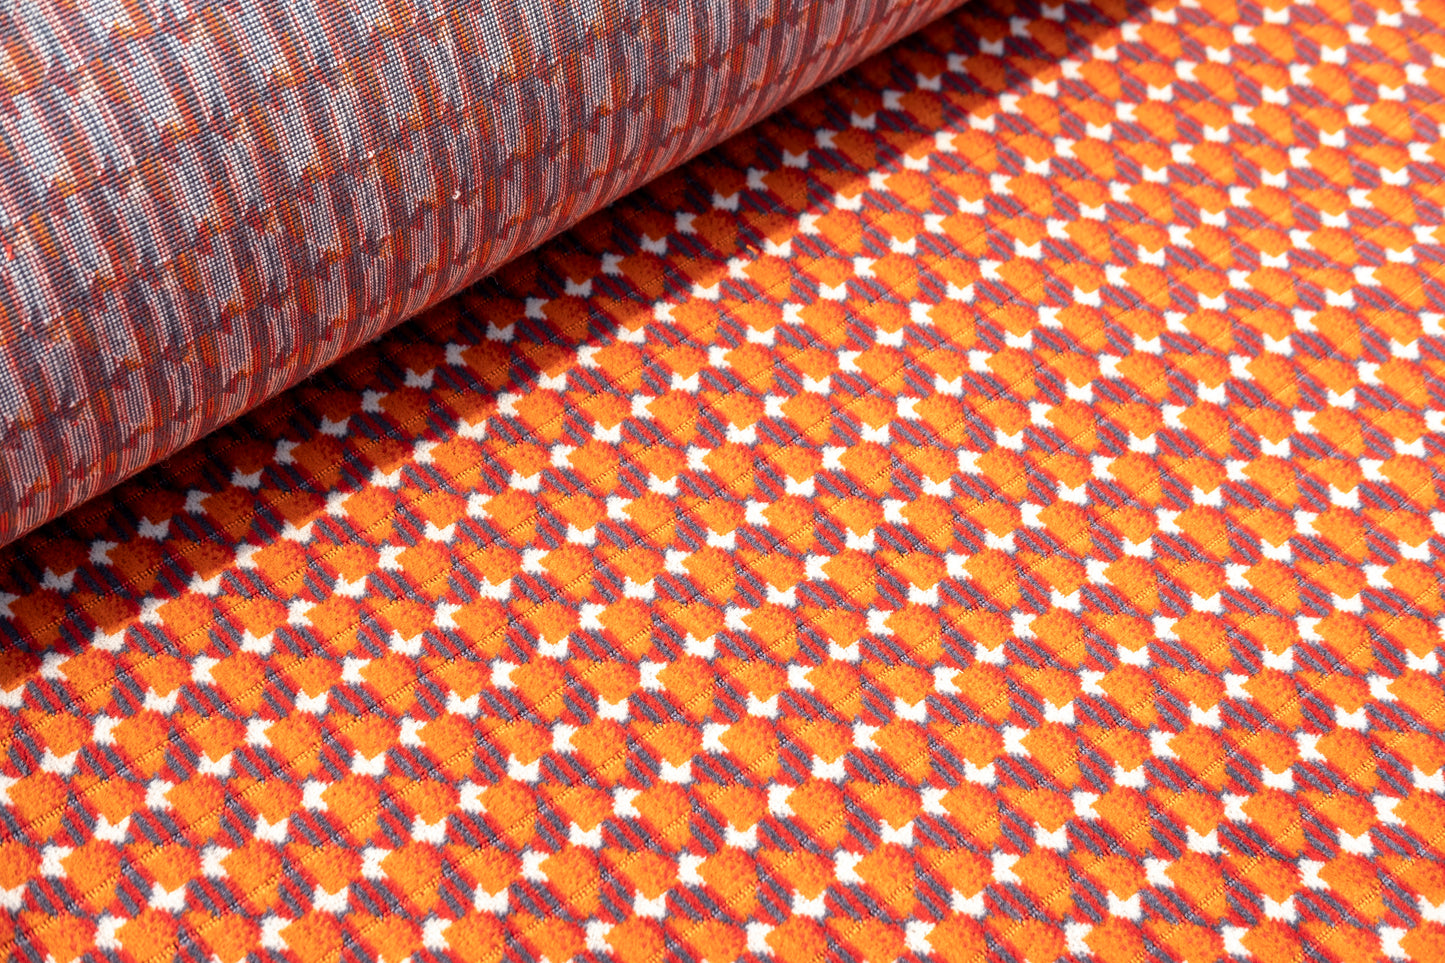 Custom Product using Glasgow Subway (Clockwork Orange) Moquette Fabric